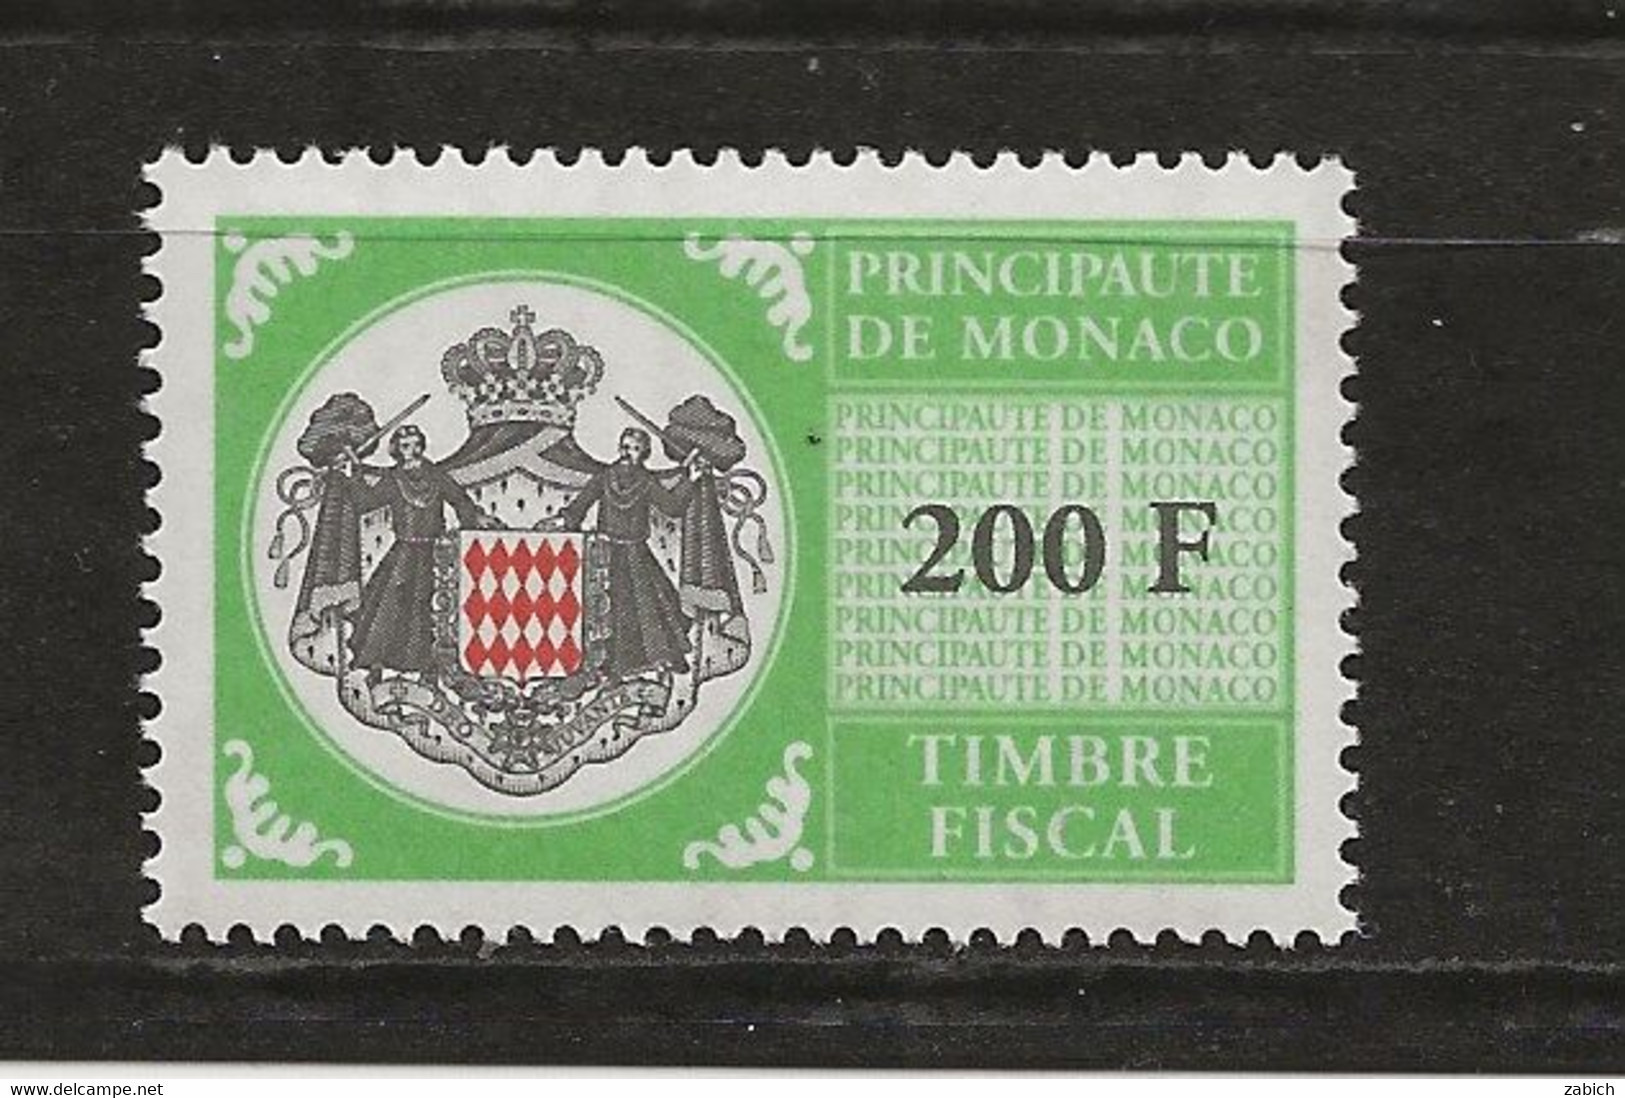 TIMBRES FISCAUX DE MONACO SERIE UNIFIEE N° 108   200F Vert Jaune (**) - Fiscaux